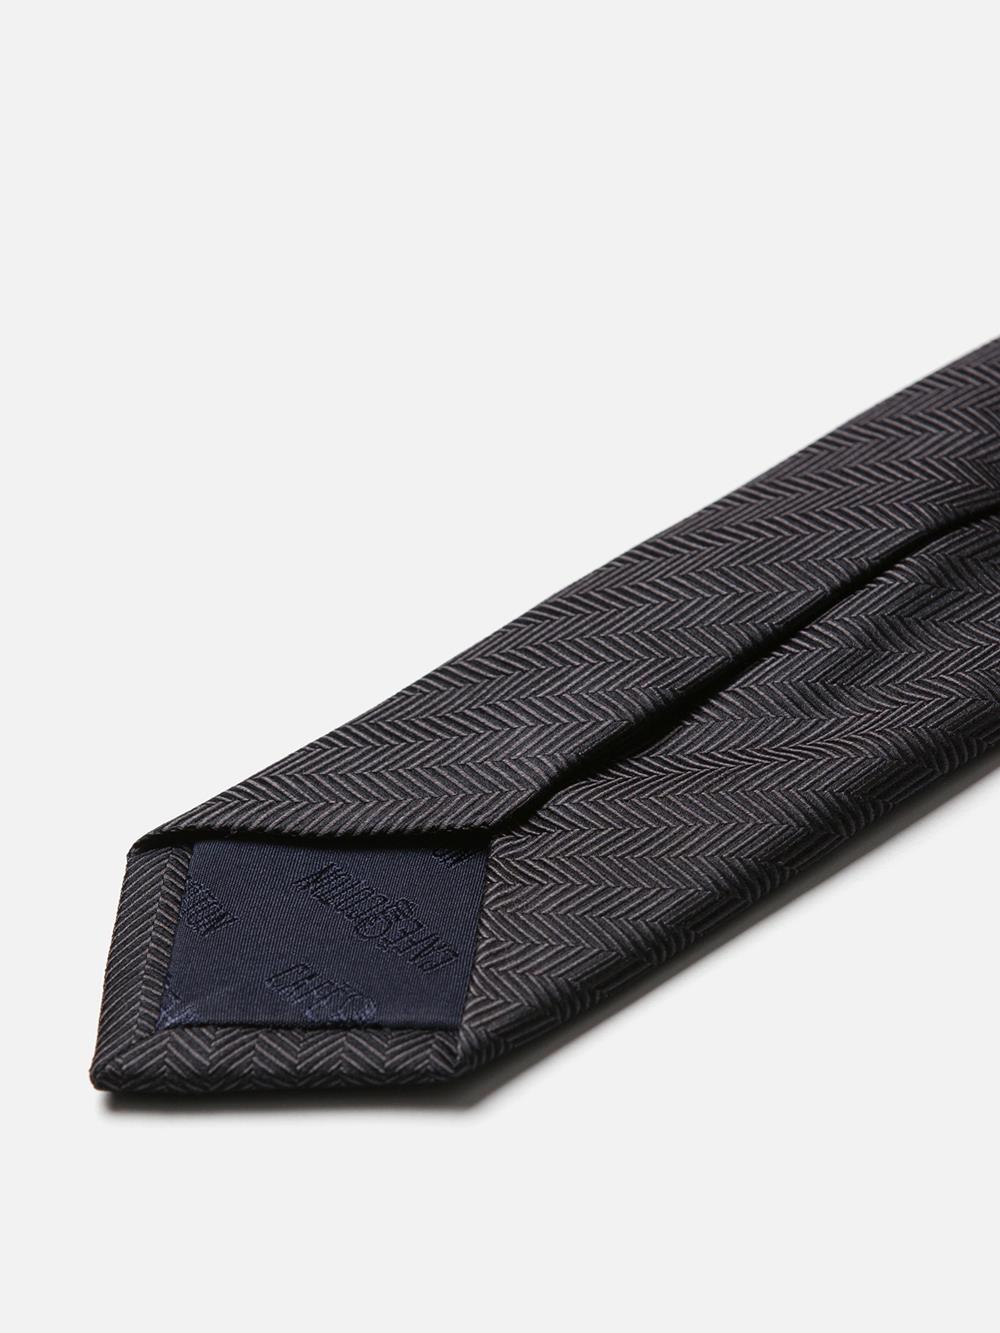 Slim silk tie in anthracite herringbone pattern